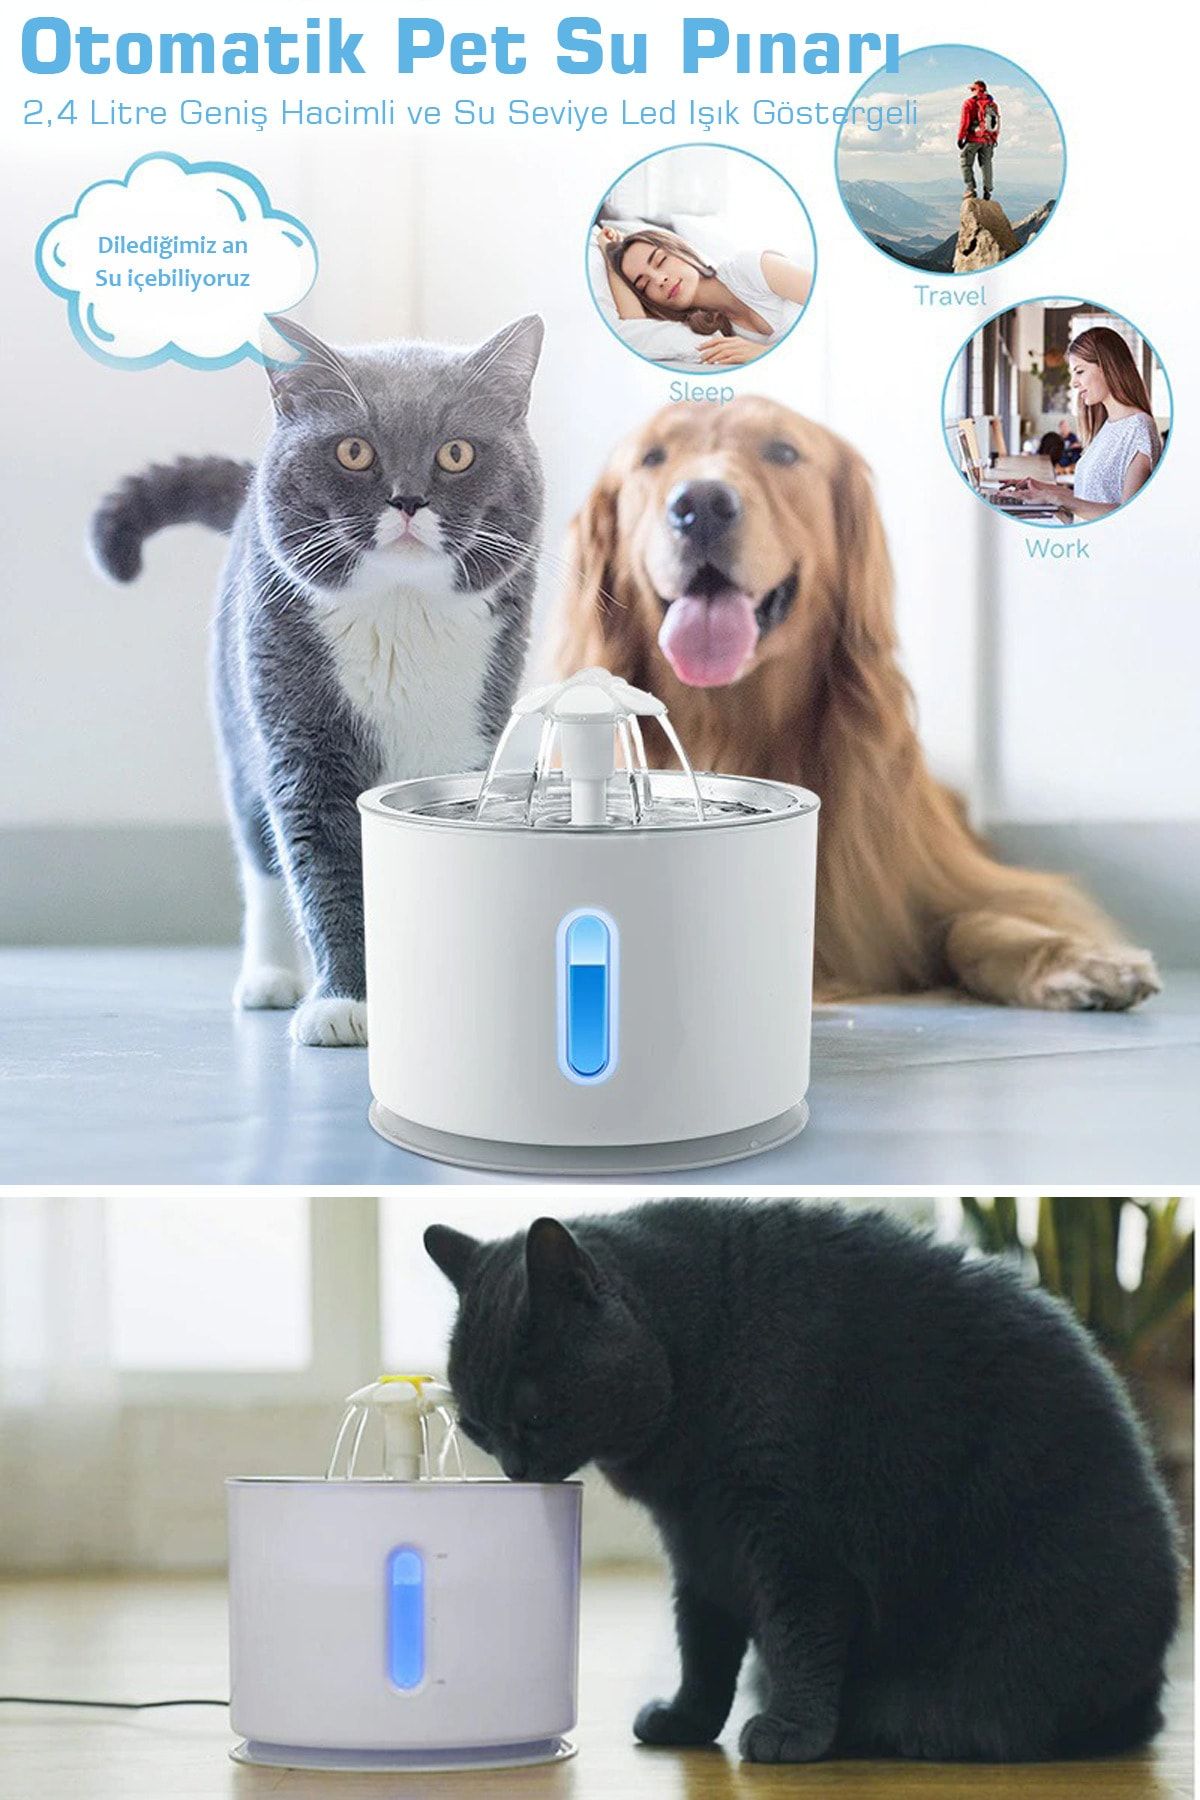 TechnoSmart Kedi Köpek Su Çeşmesi Su Pınarı Kabı Led Işık Göstergeli